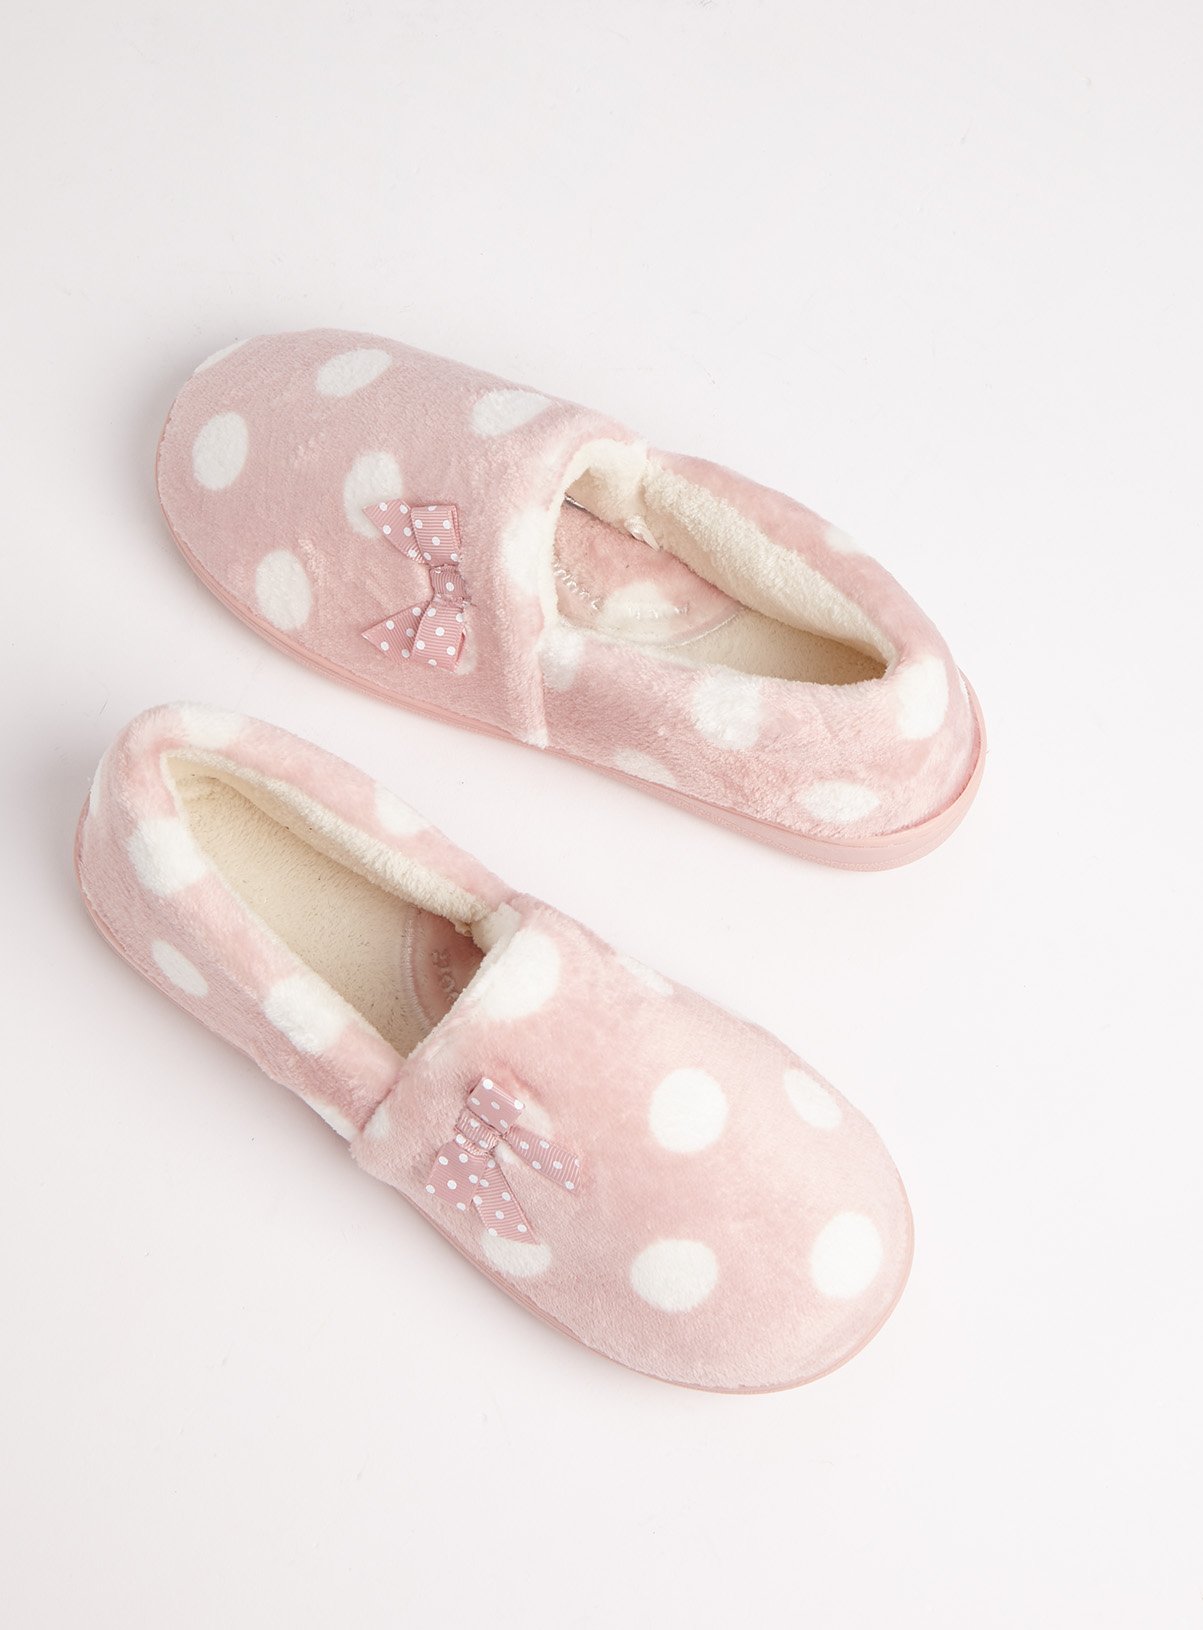 sainsbury slippers